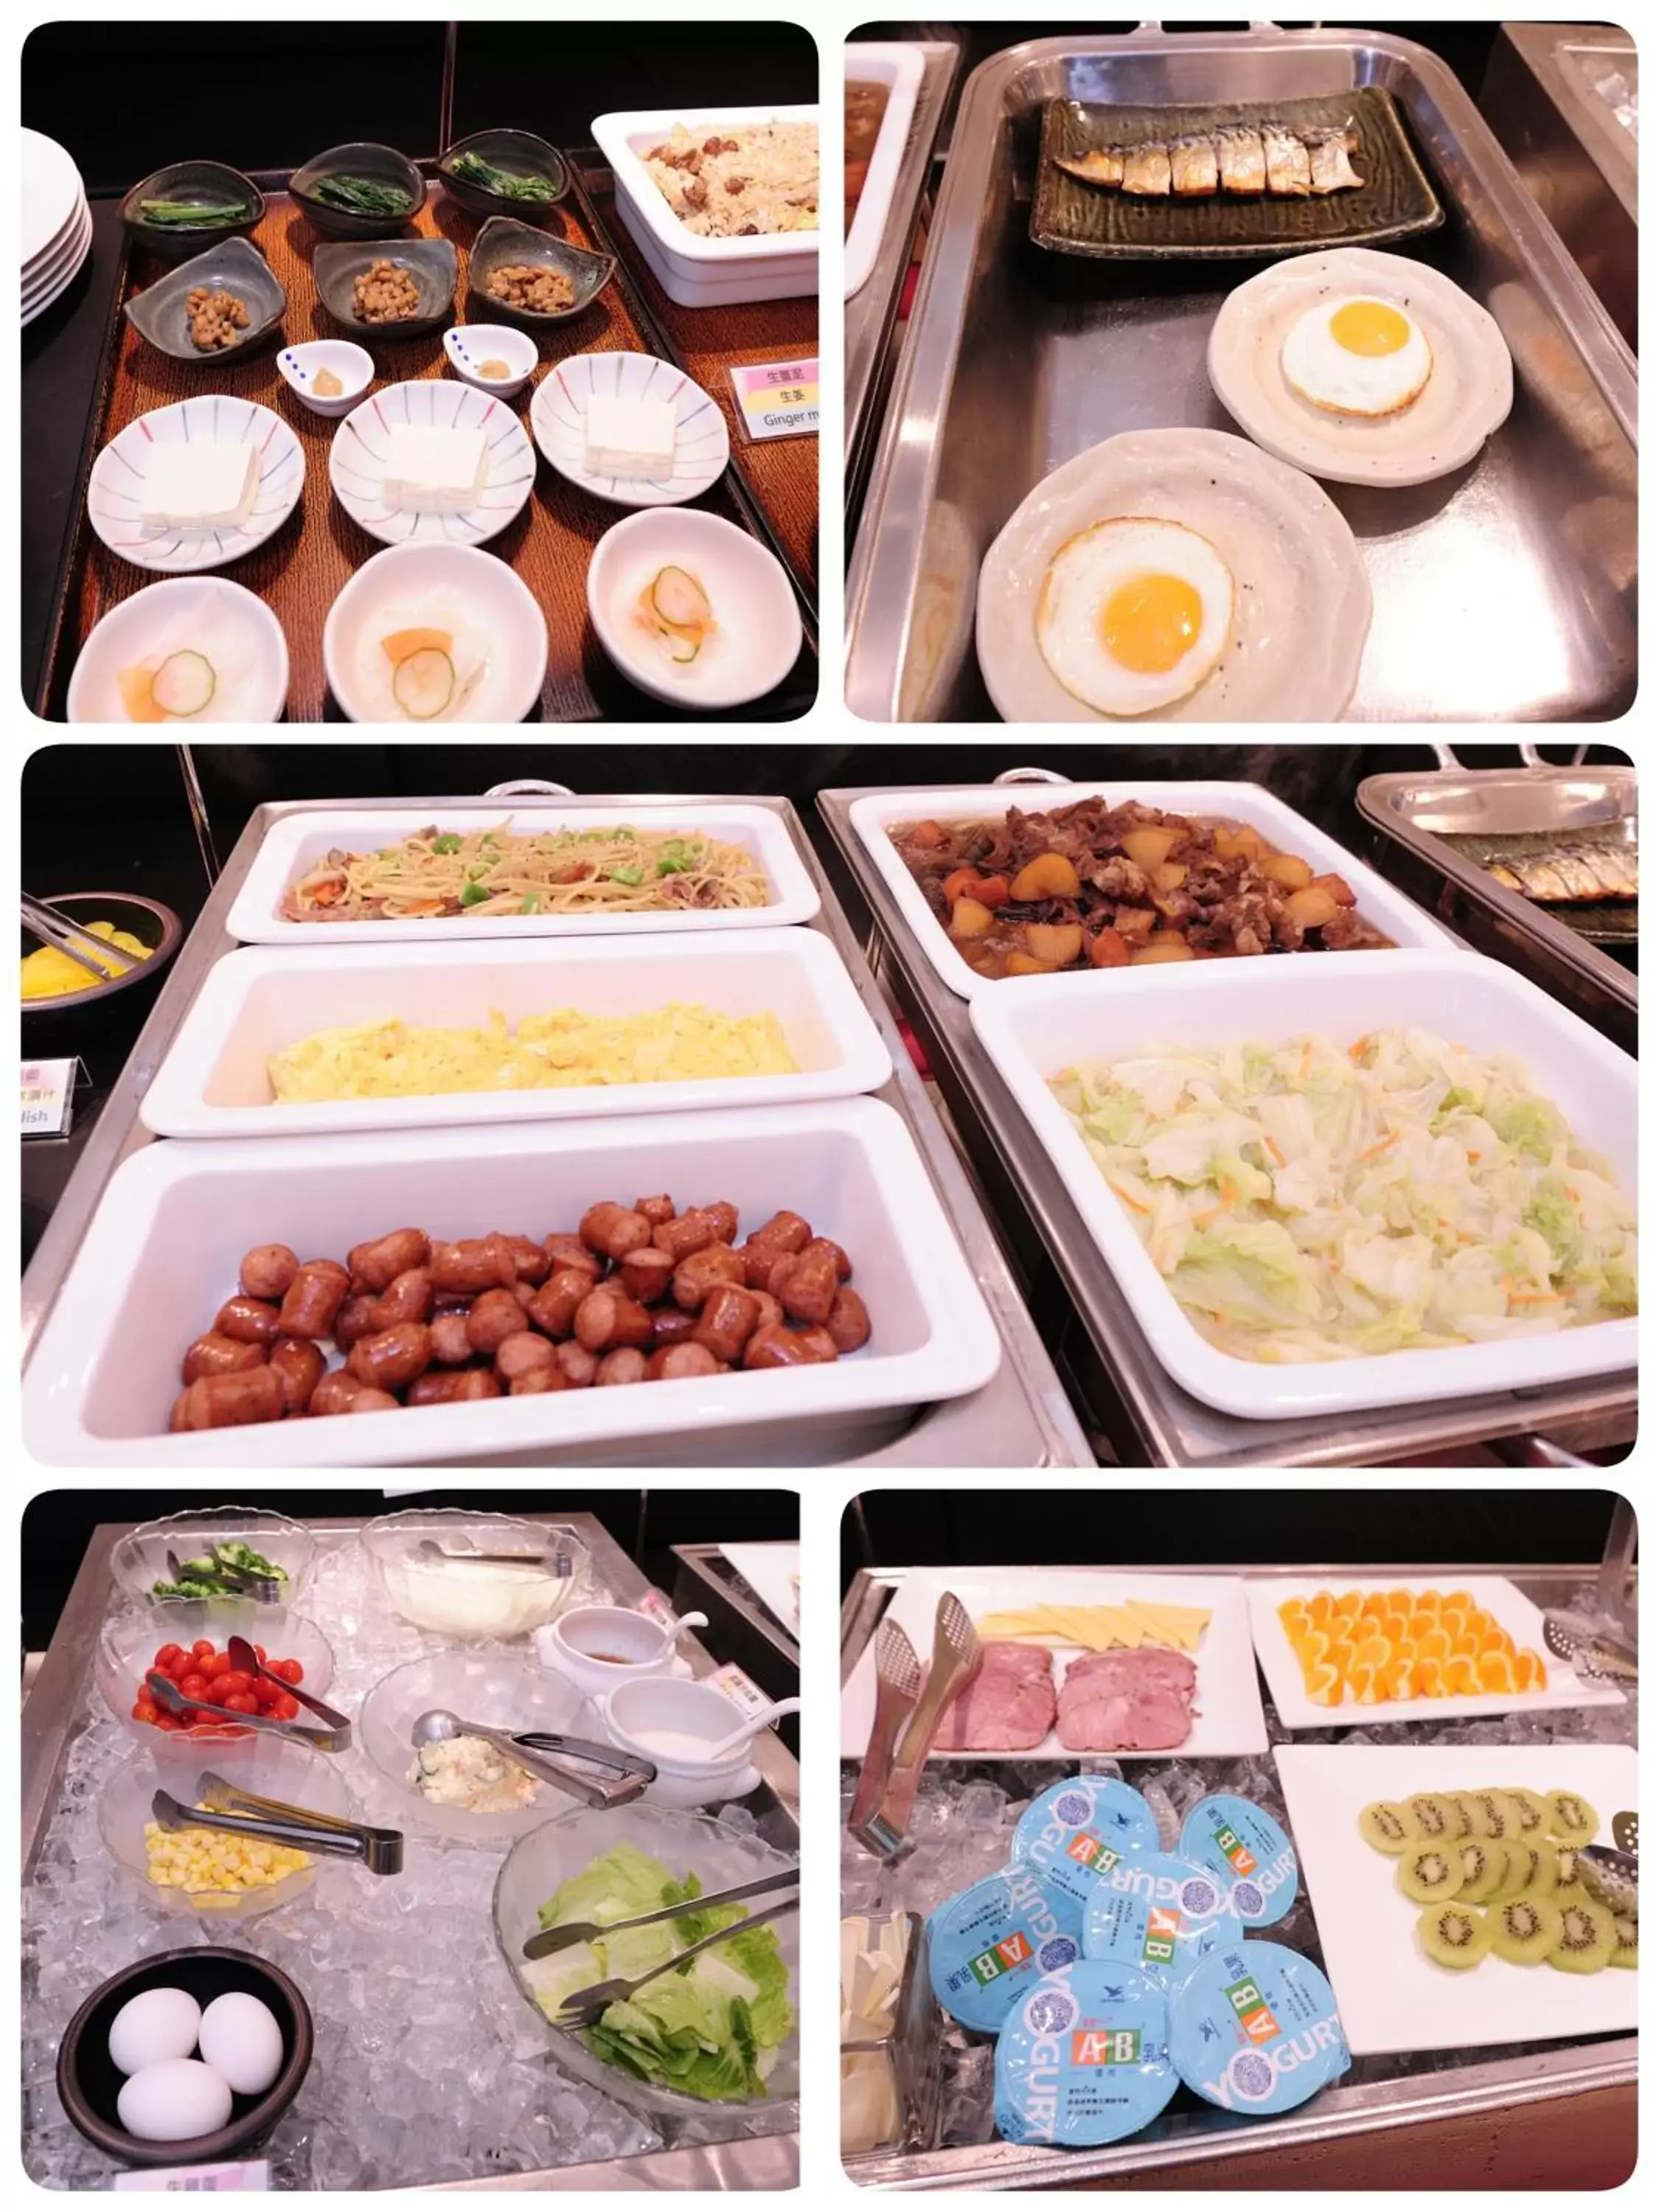 Buffet breakfast in Hotel Sunroute Taipei